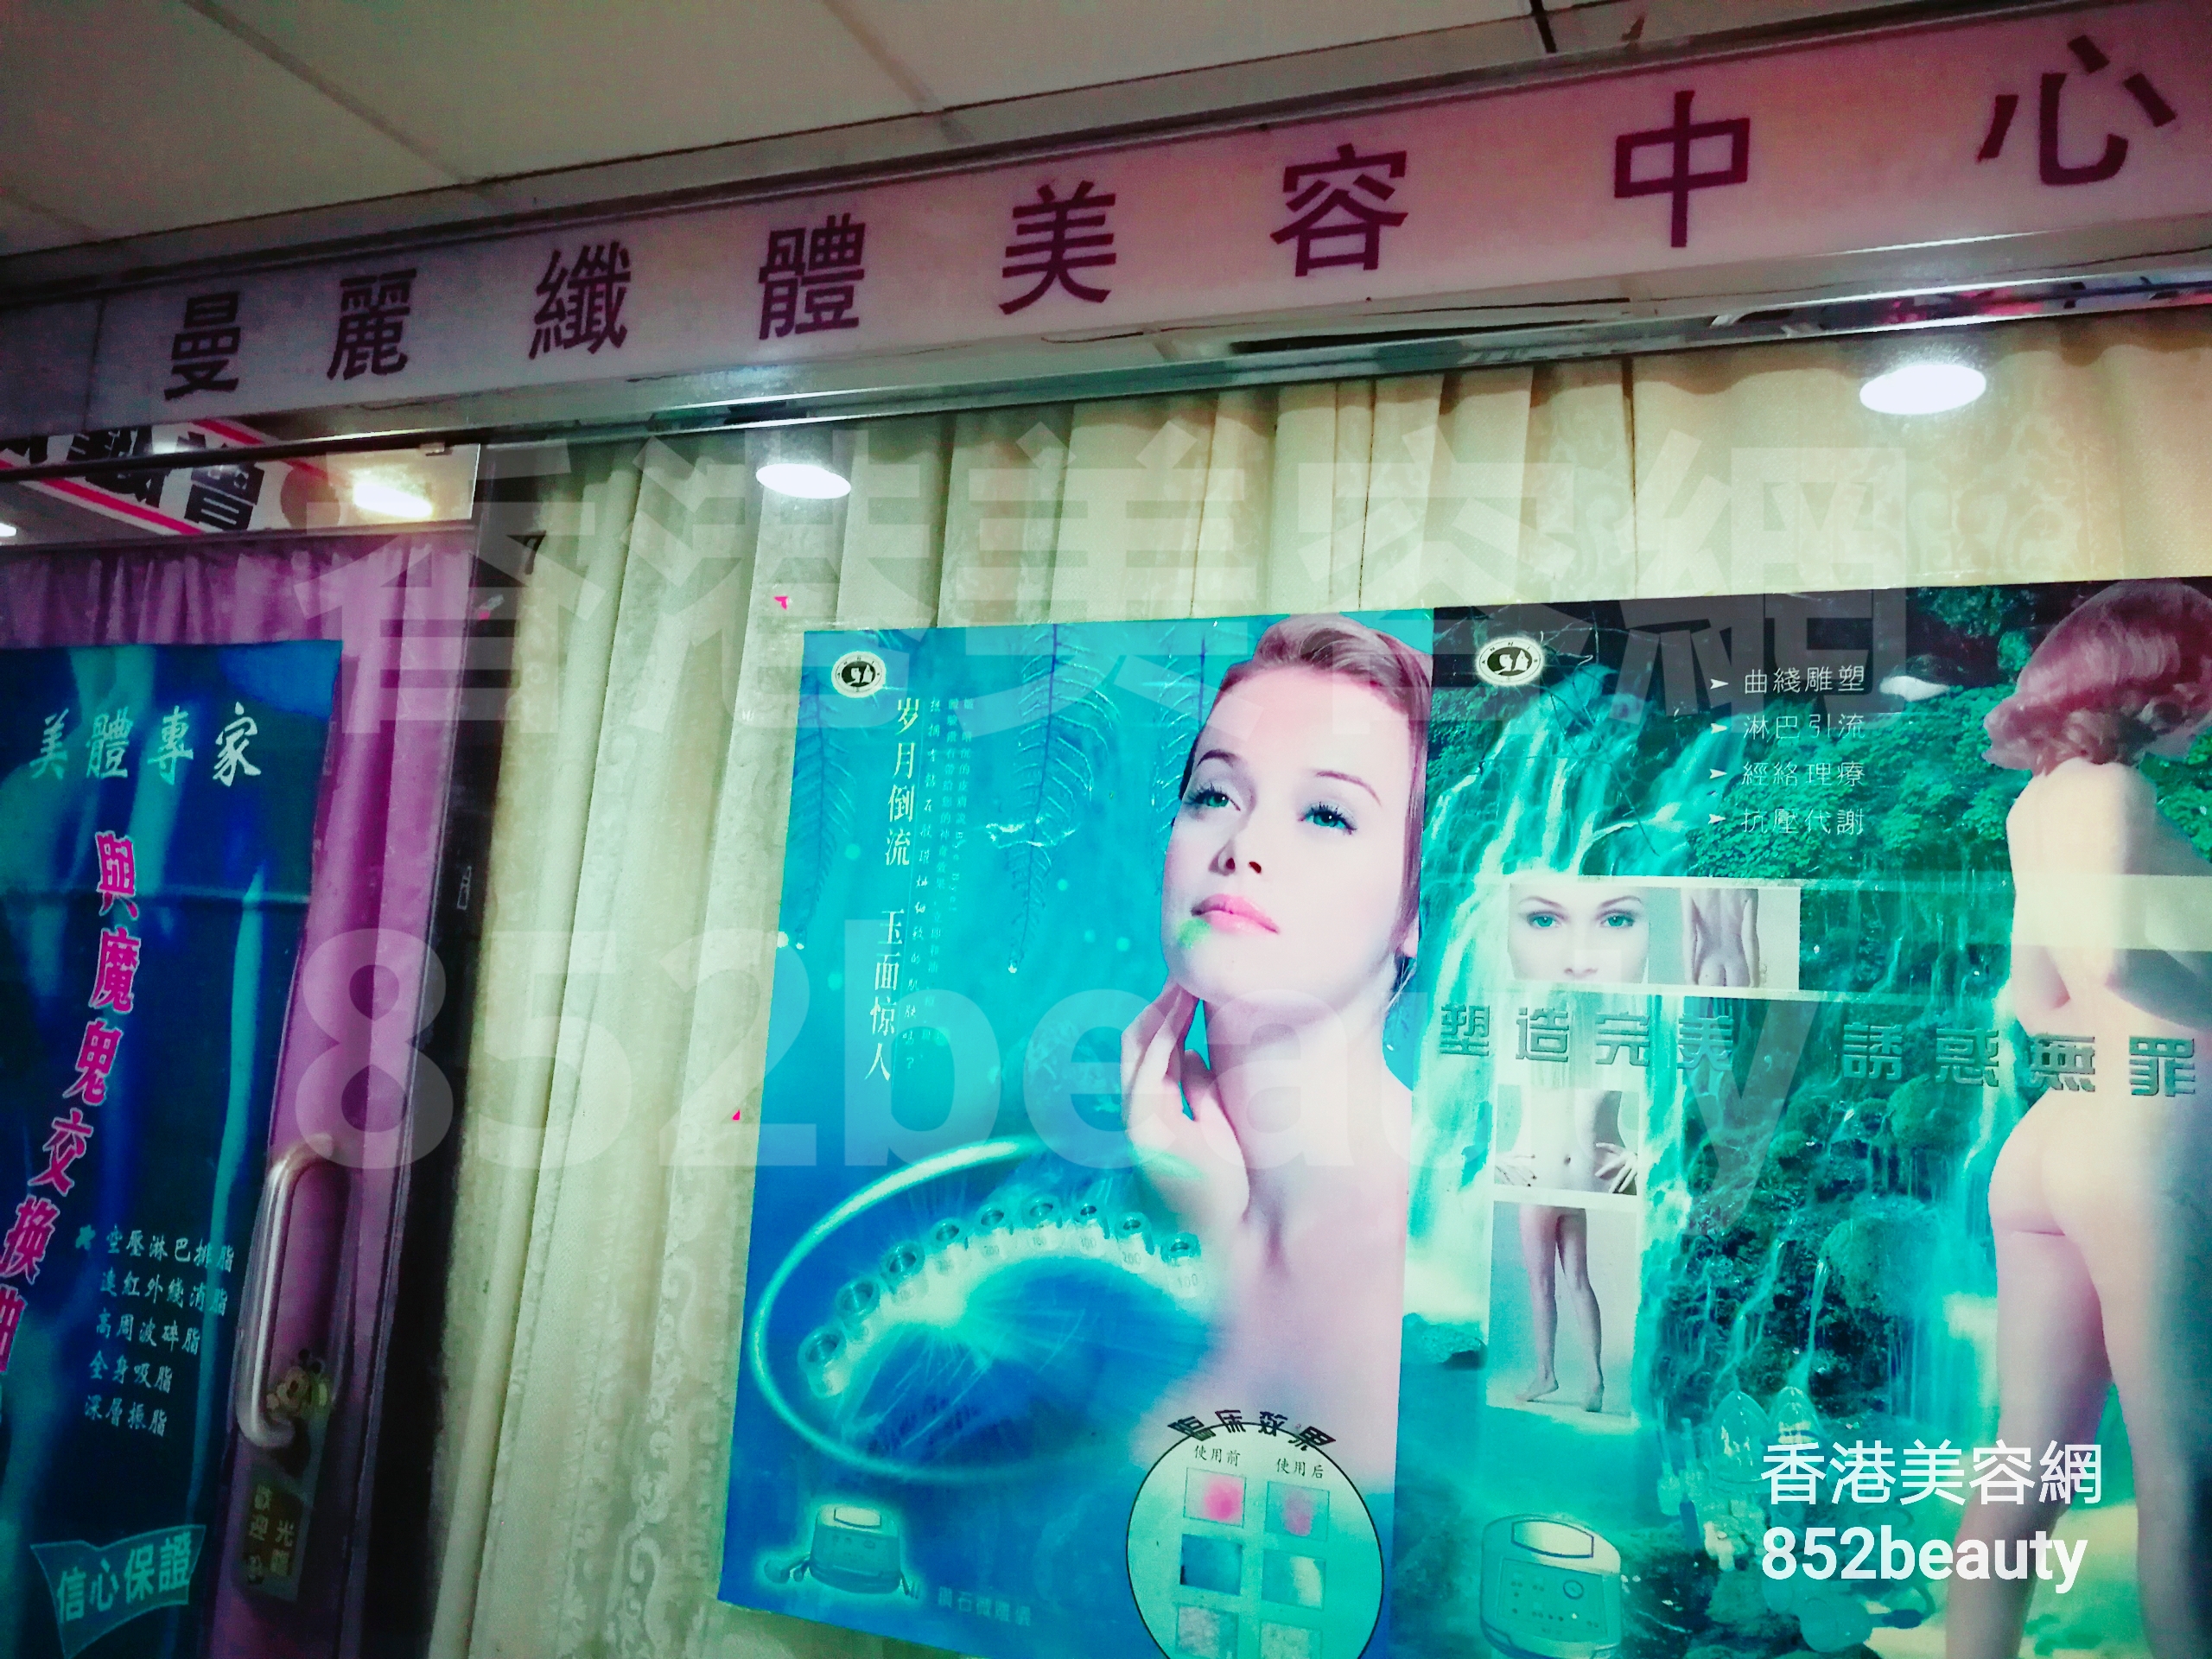 Hong Kong Beauty Salon Beauty Salon / Beautician: 曼麗織體美容中心